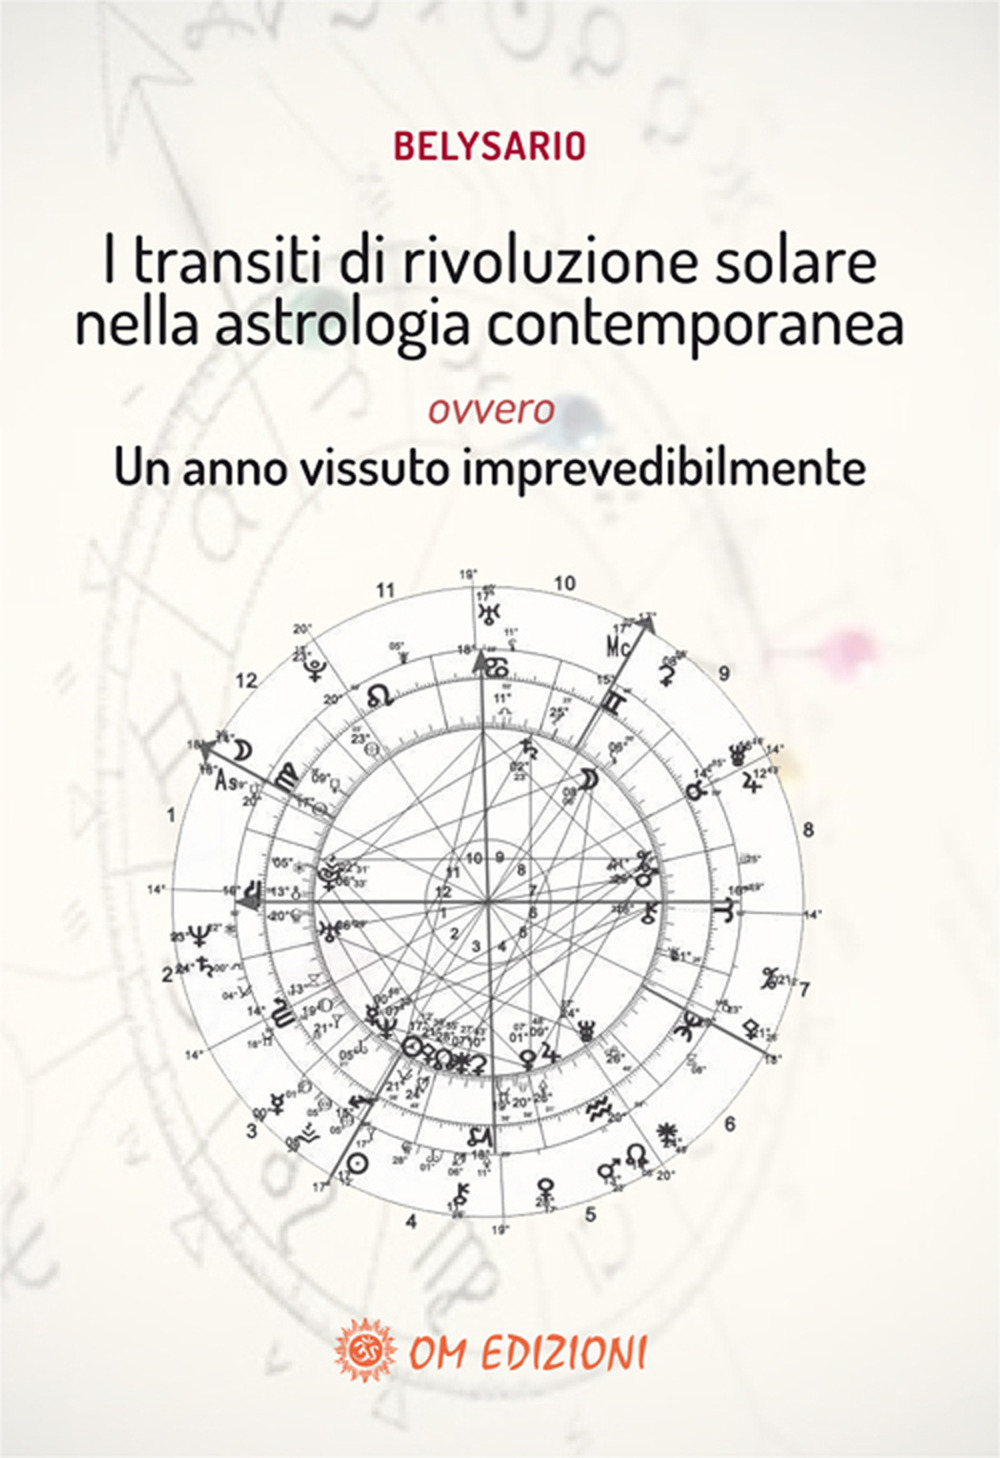 Image of I transiti di rivoluzione solare nella astrologia contemporanea ovvero un anno vissuto imprevedibilmente